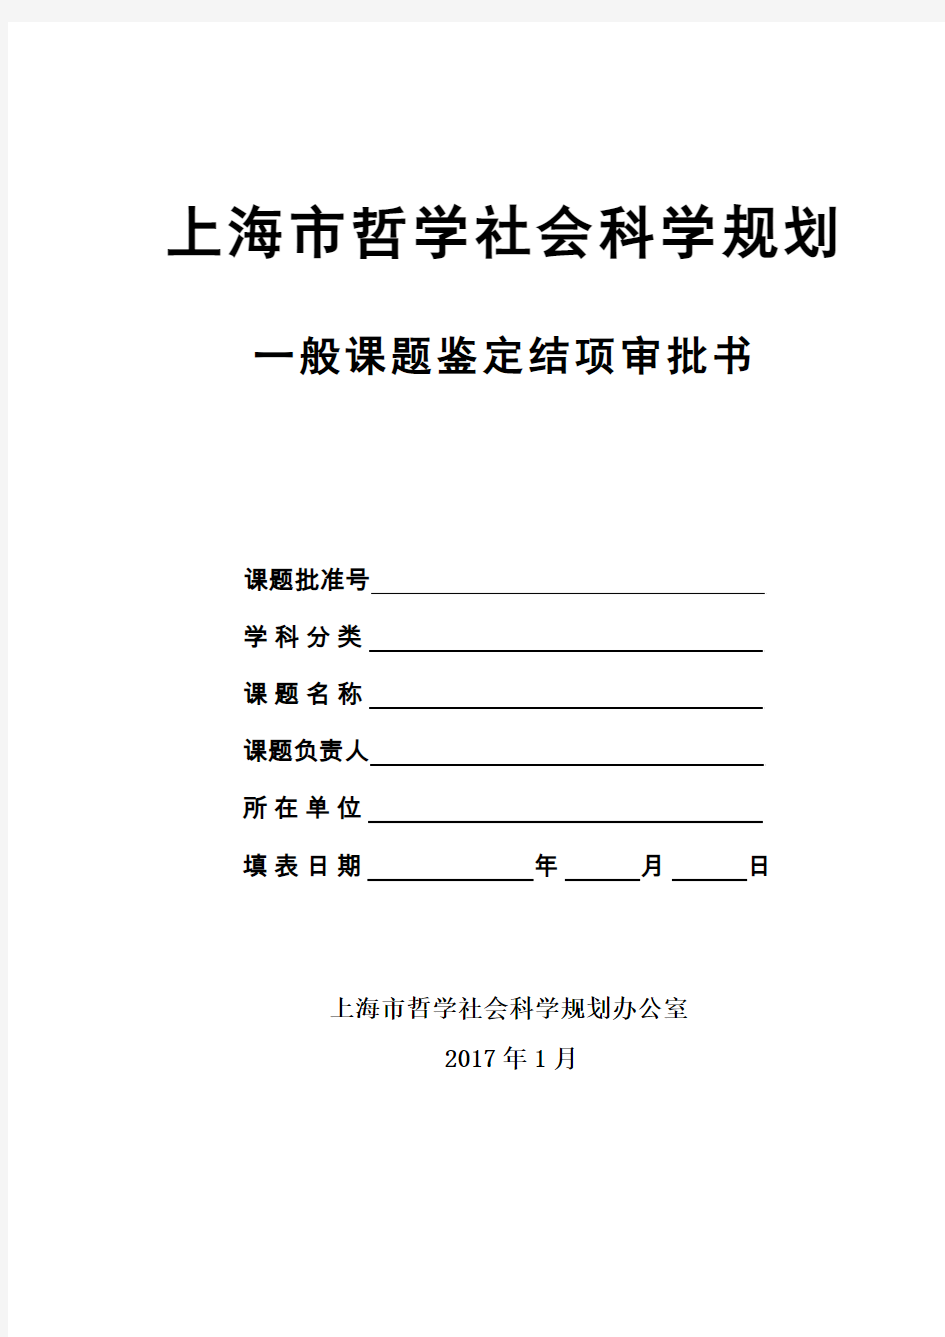 上海市哲学社会科学规划课题结项审批书2017版(一般课题)